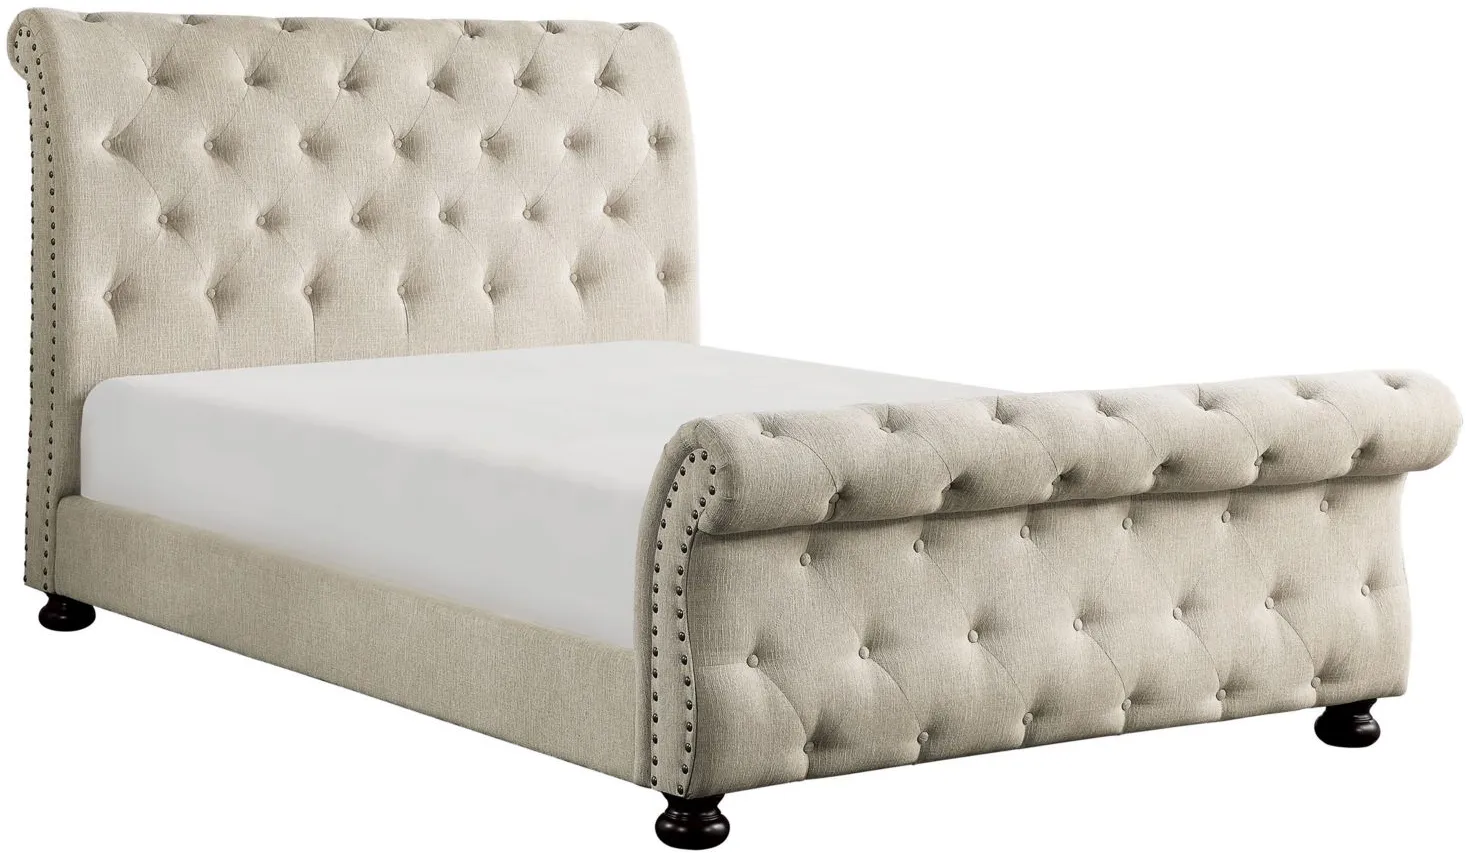 Sanders Eastern Upholstered Bed in Beige by Homelegance